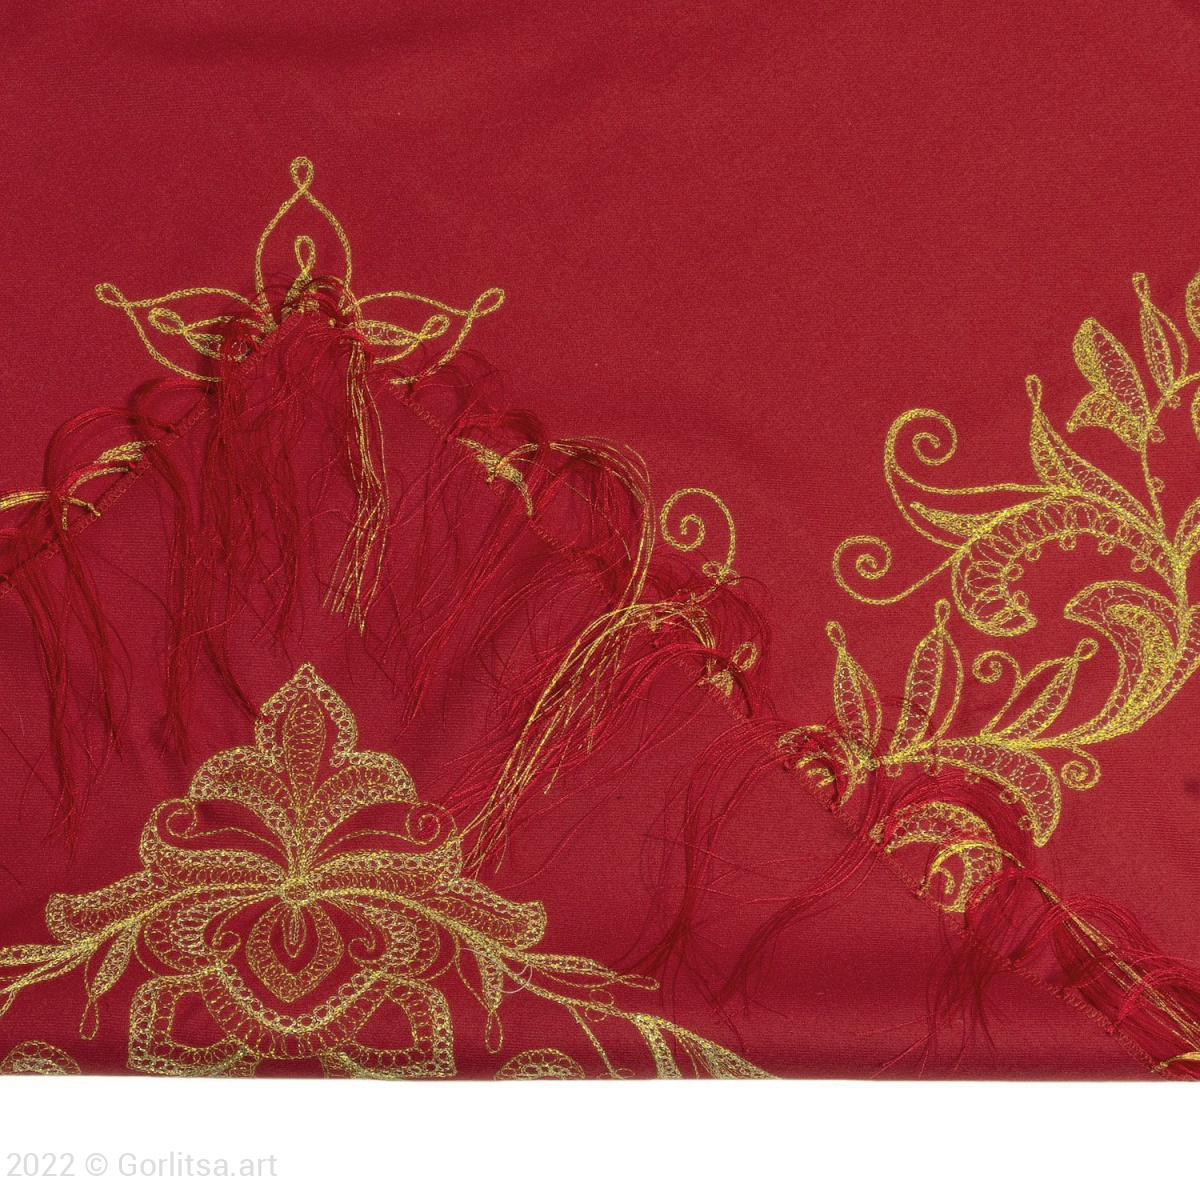 Платок «Орхидея», р.1058, цвет: красный, /золото/, шерсть шерсть Торжокские золотошвеи фото 2